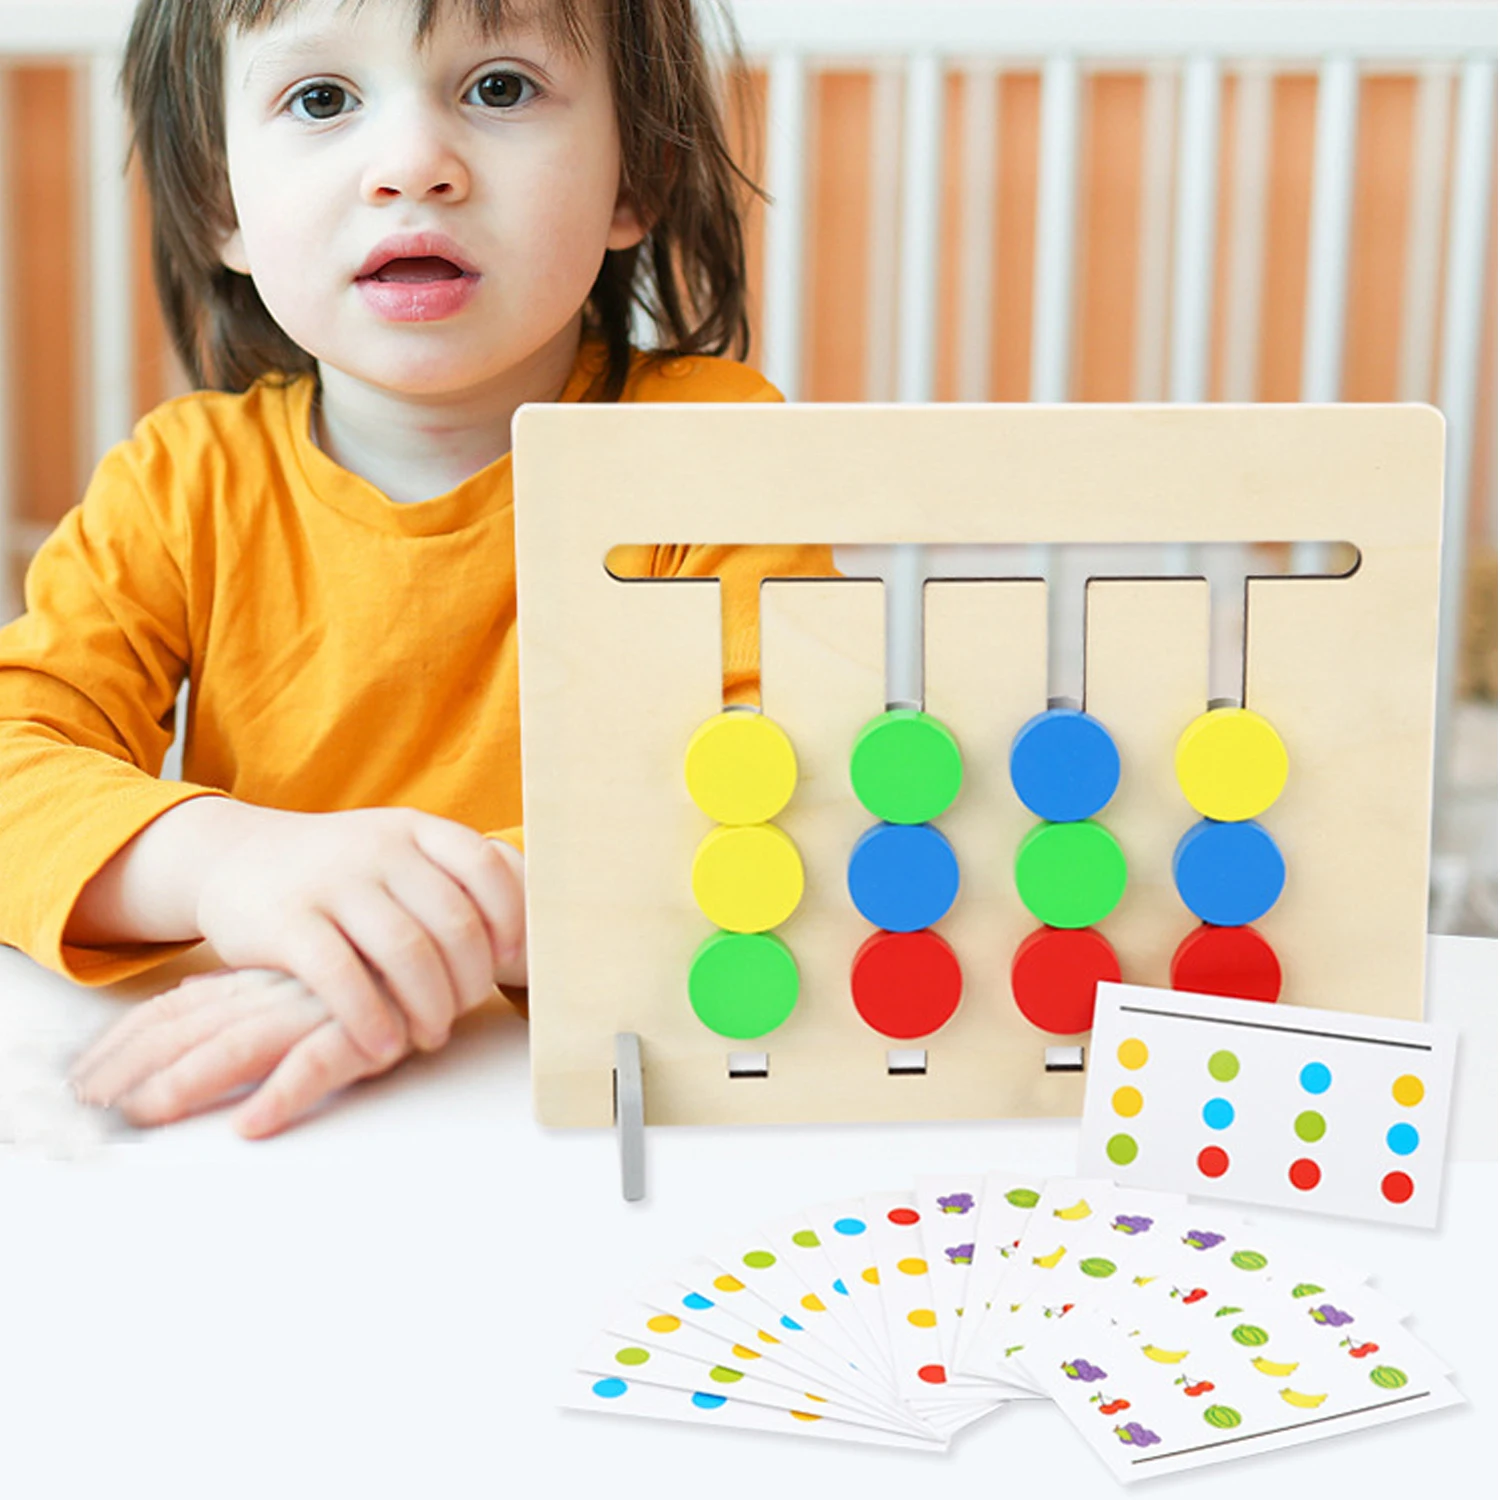 6 цветов Монтессори пластиковые прозрачные Ракетки Форма игрушка Рисование Живопись цвет соответствия познавательные игрушки для детей цвет обучения